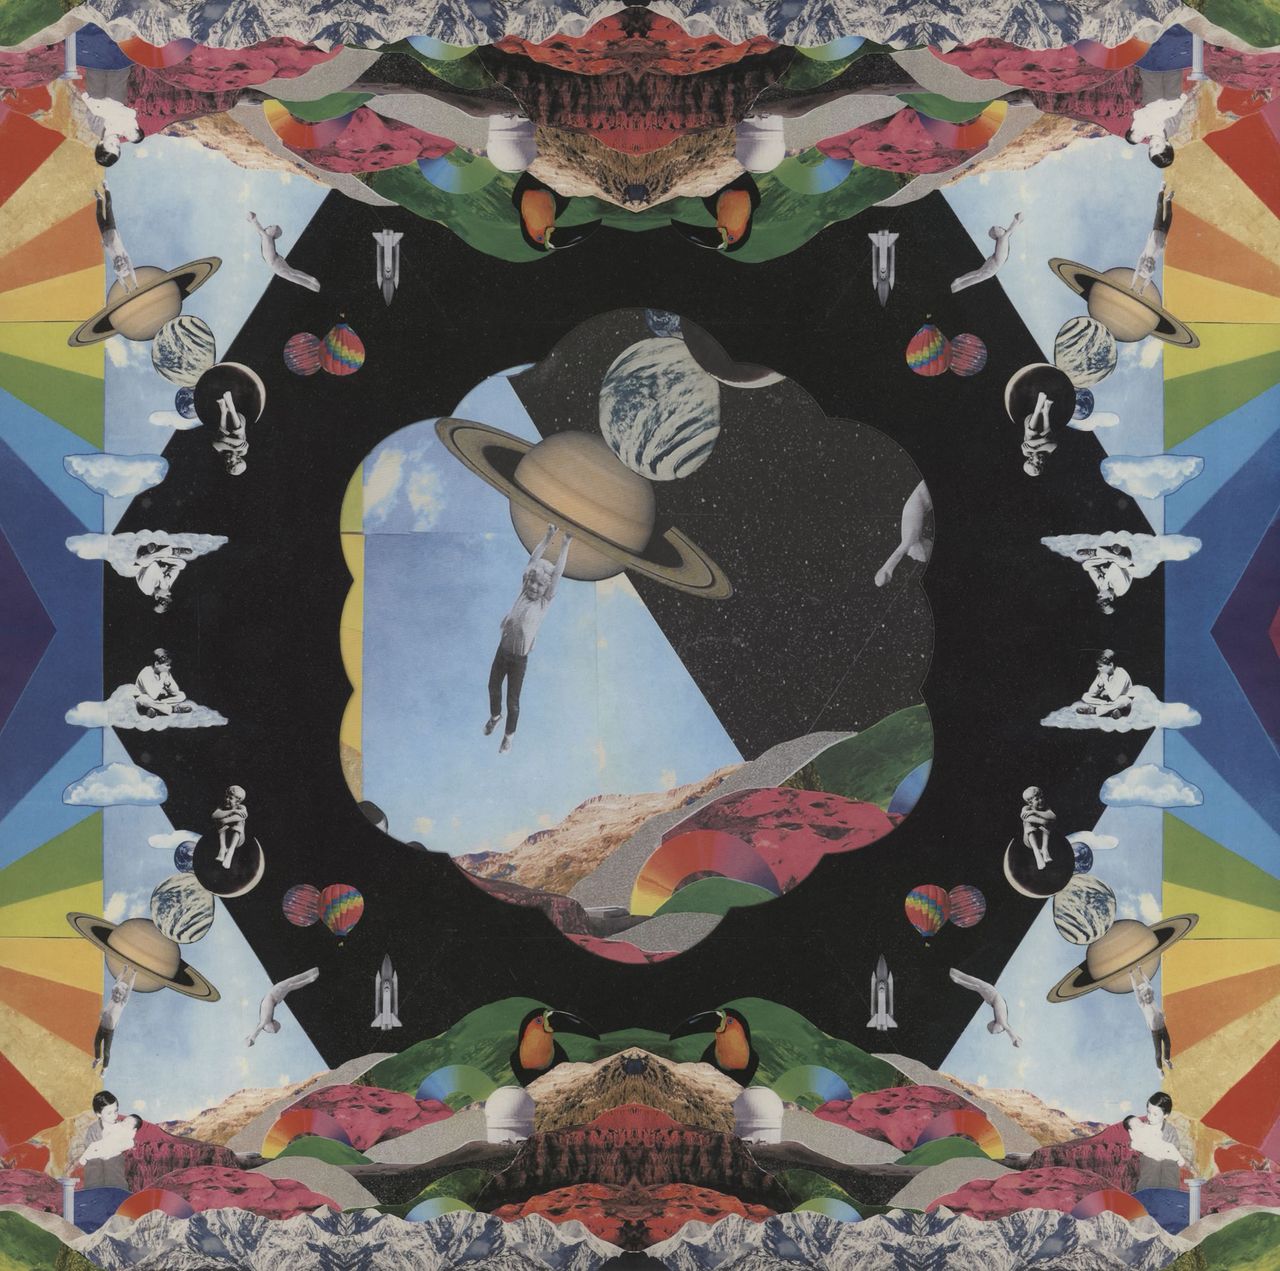 Coldplay A Head Full of Dreams - 180gm UK 2-LP vinyl set